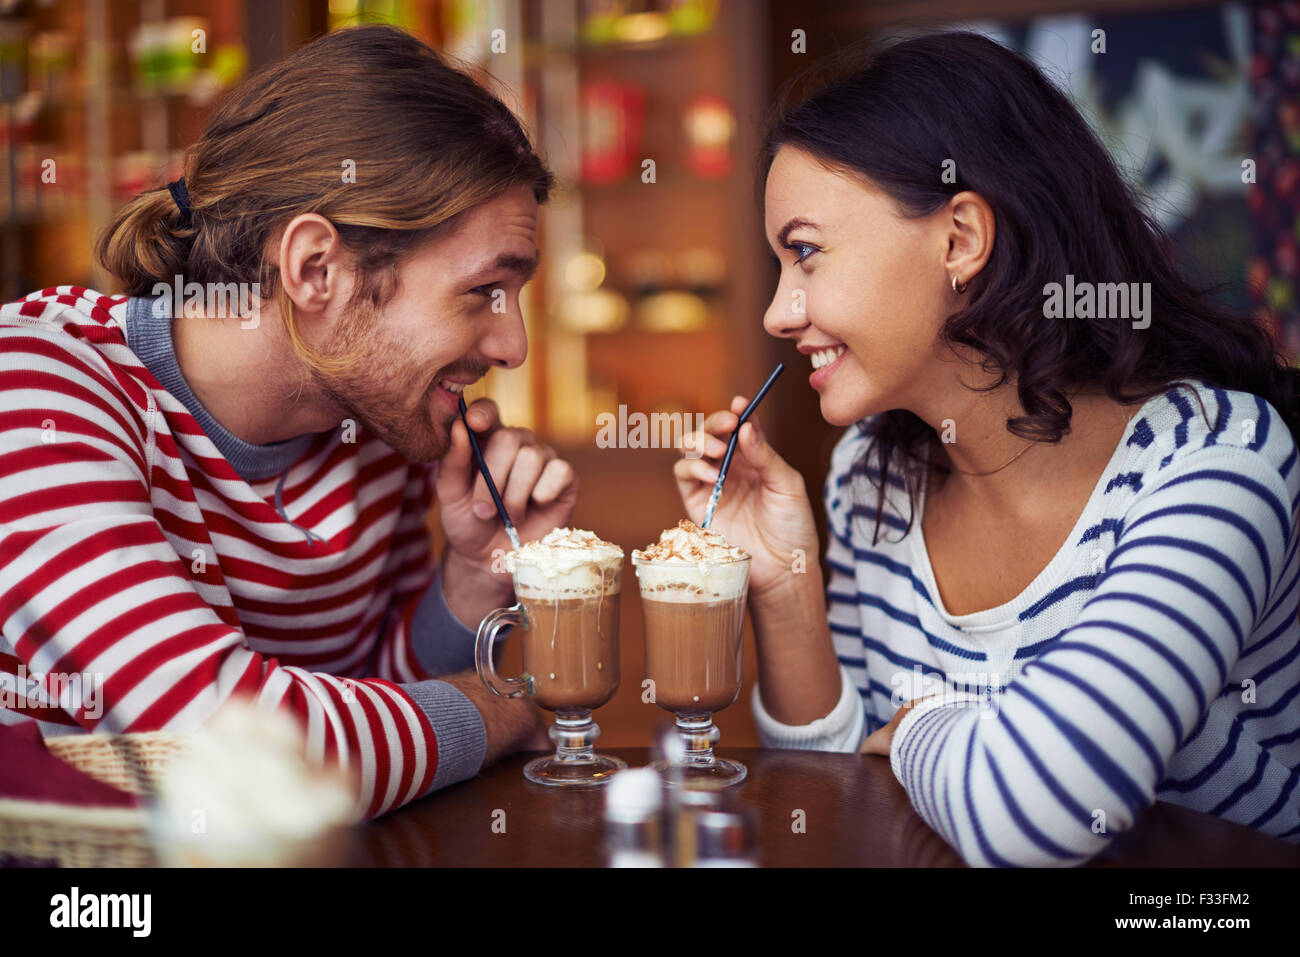 Glückliche junge Termine mit Latte, während der Rest im café Stockfoto